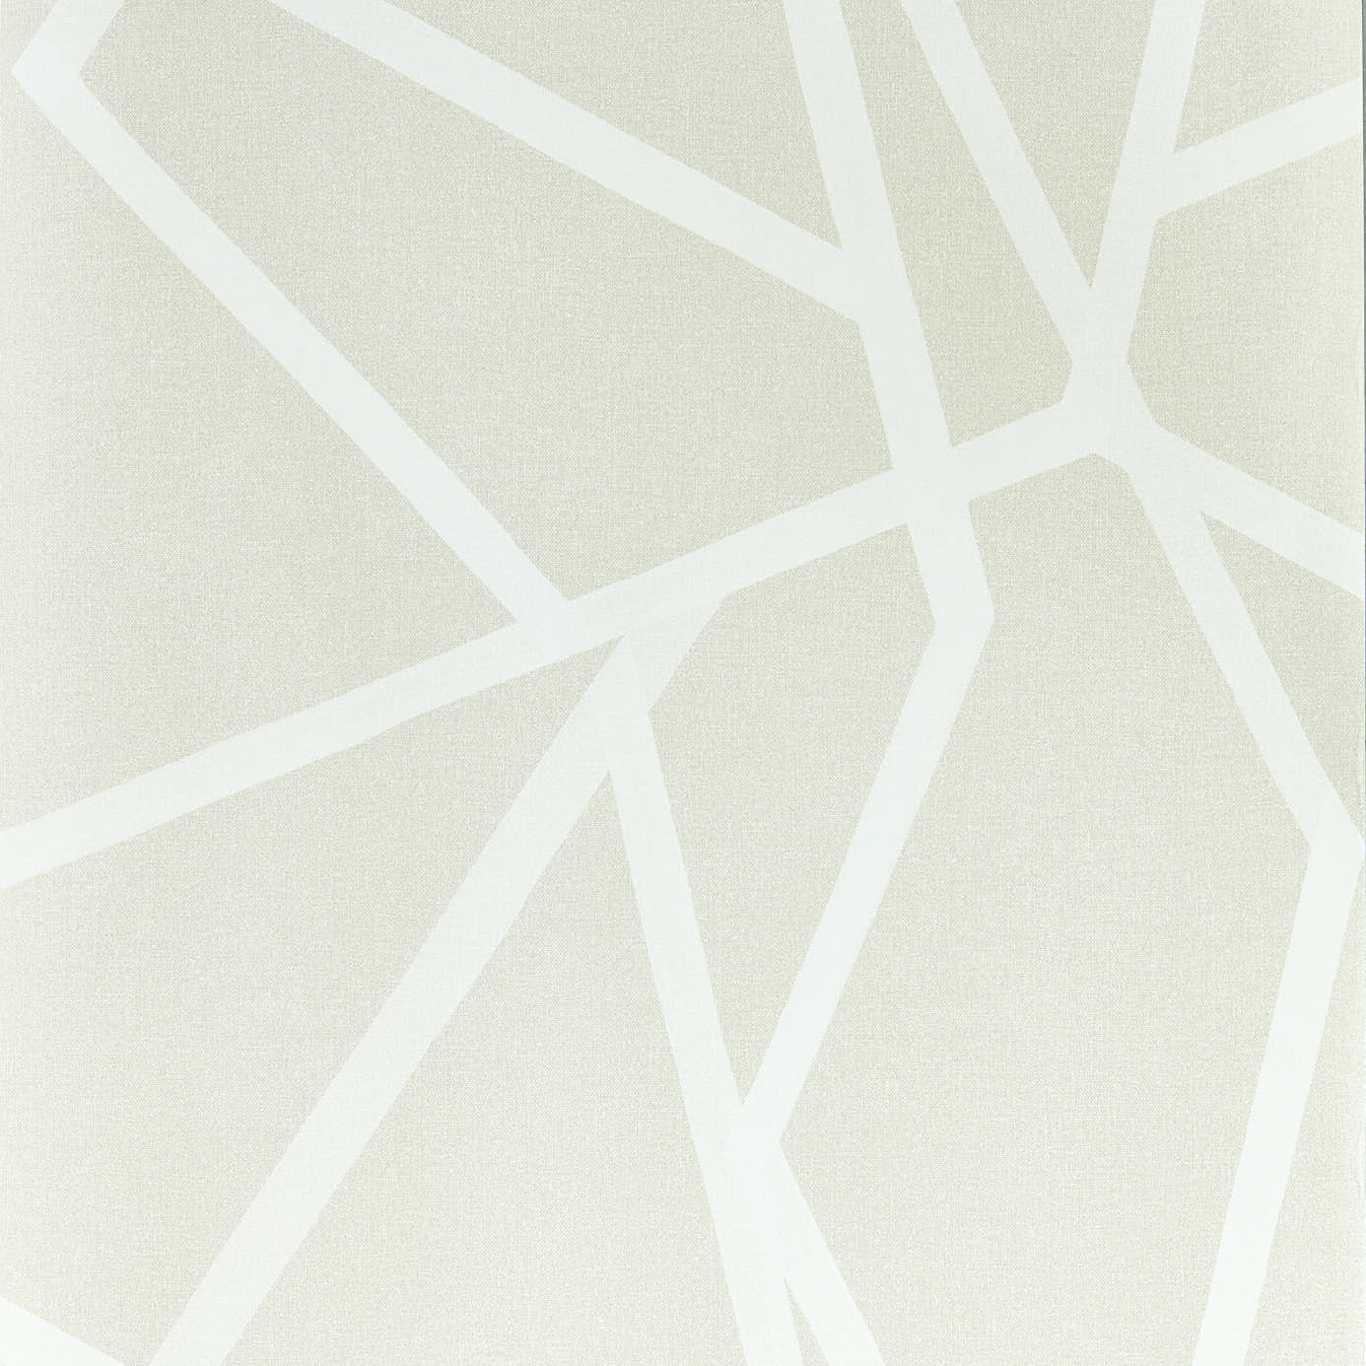 Sumi Dove/White Wallpaper by HAR